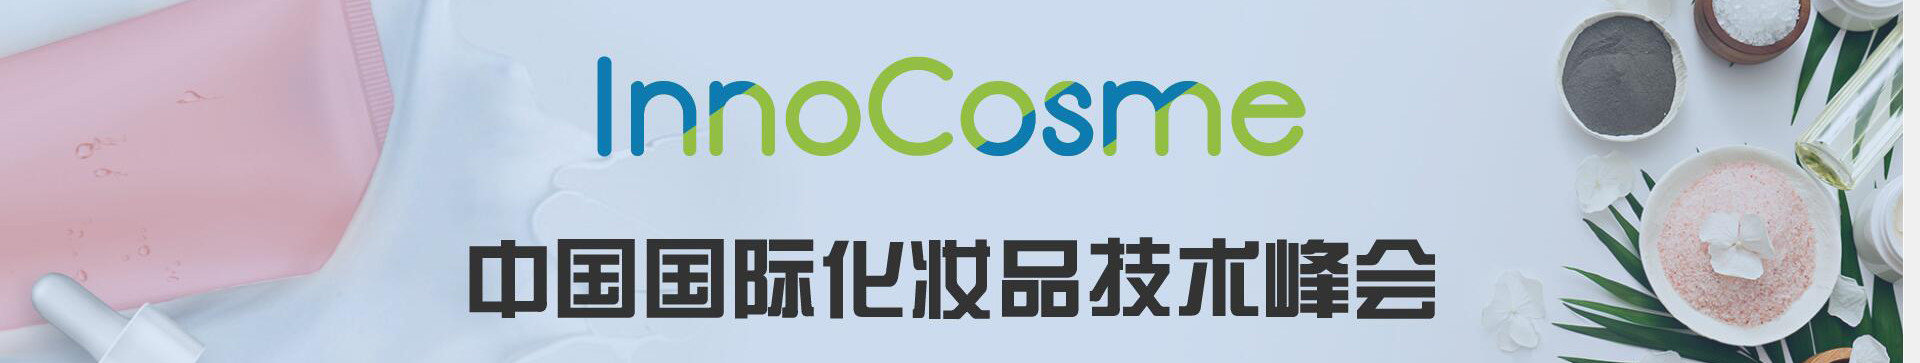 InnoCosme 2017中国国际化妆品技术峰会